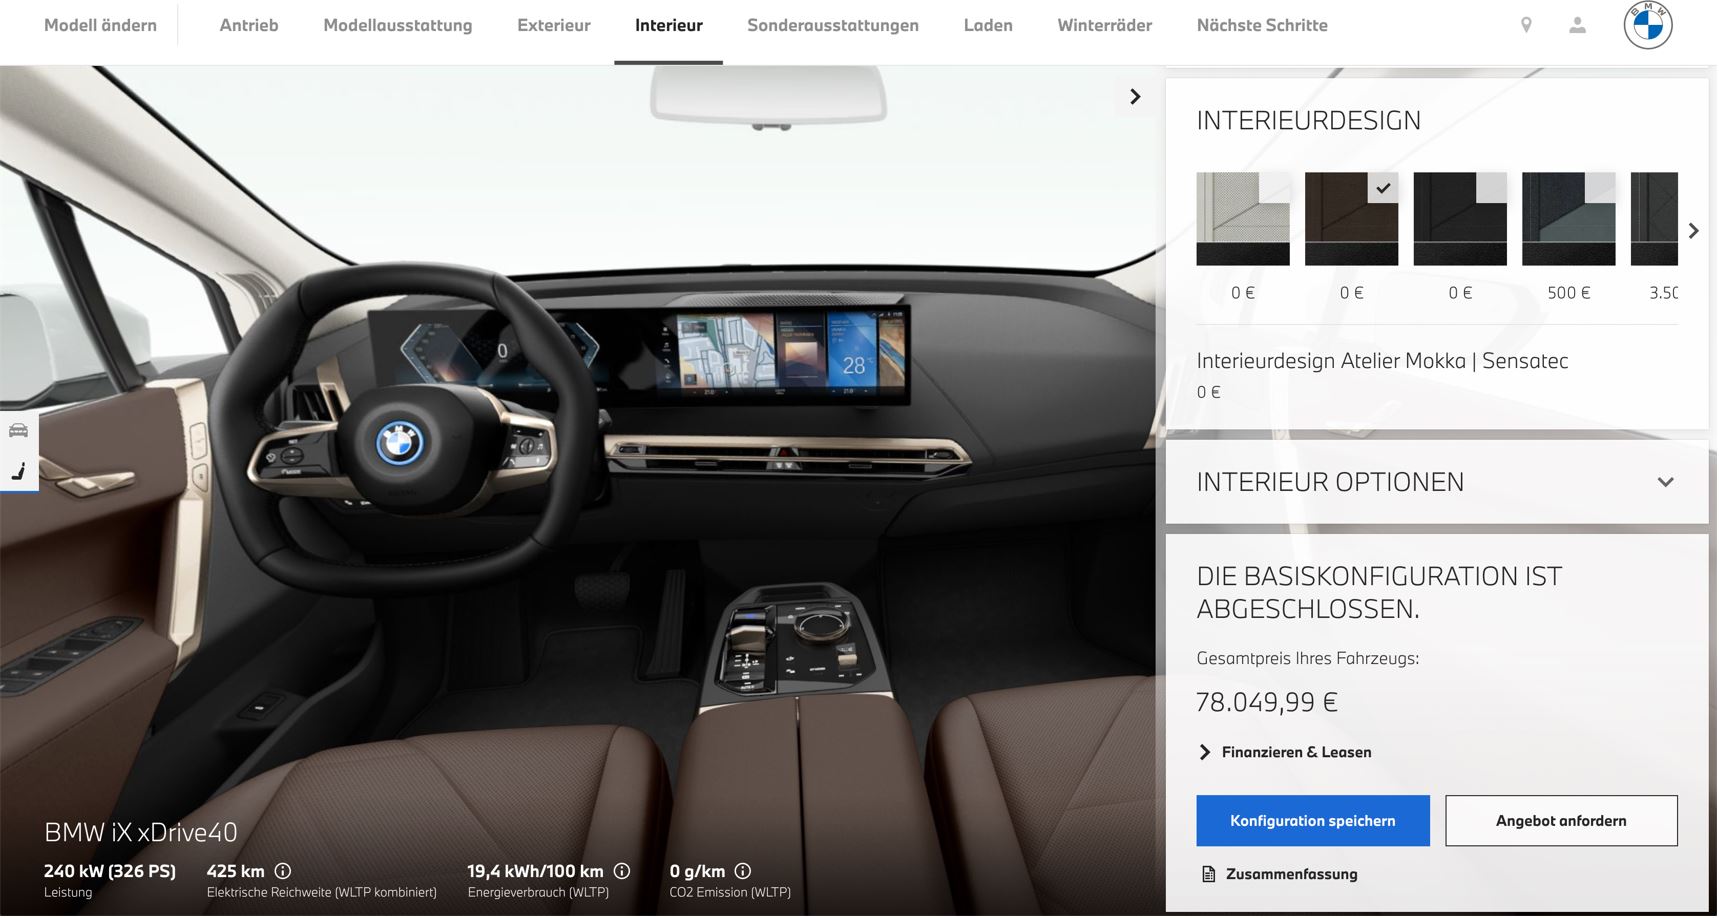 NTT DATA realisiert neue Generation des BMW Online Konfigurators